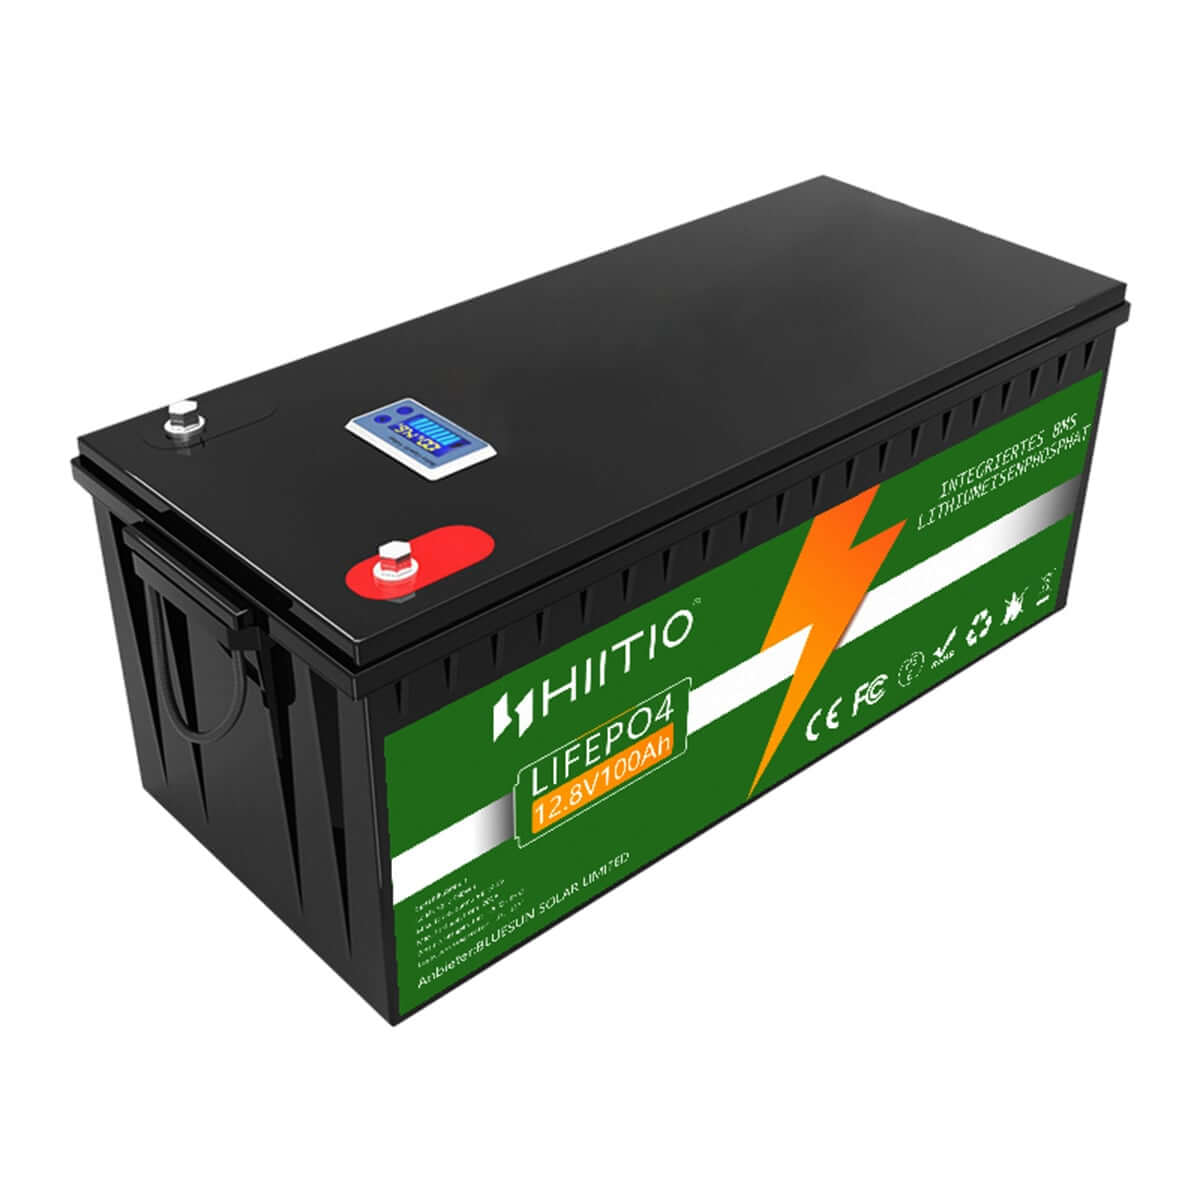 LiFePo4 battery 12V 60AH, 319,00 €